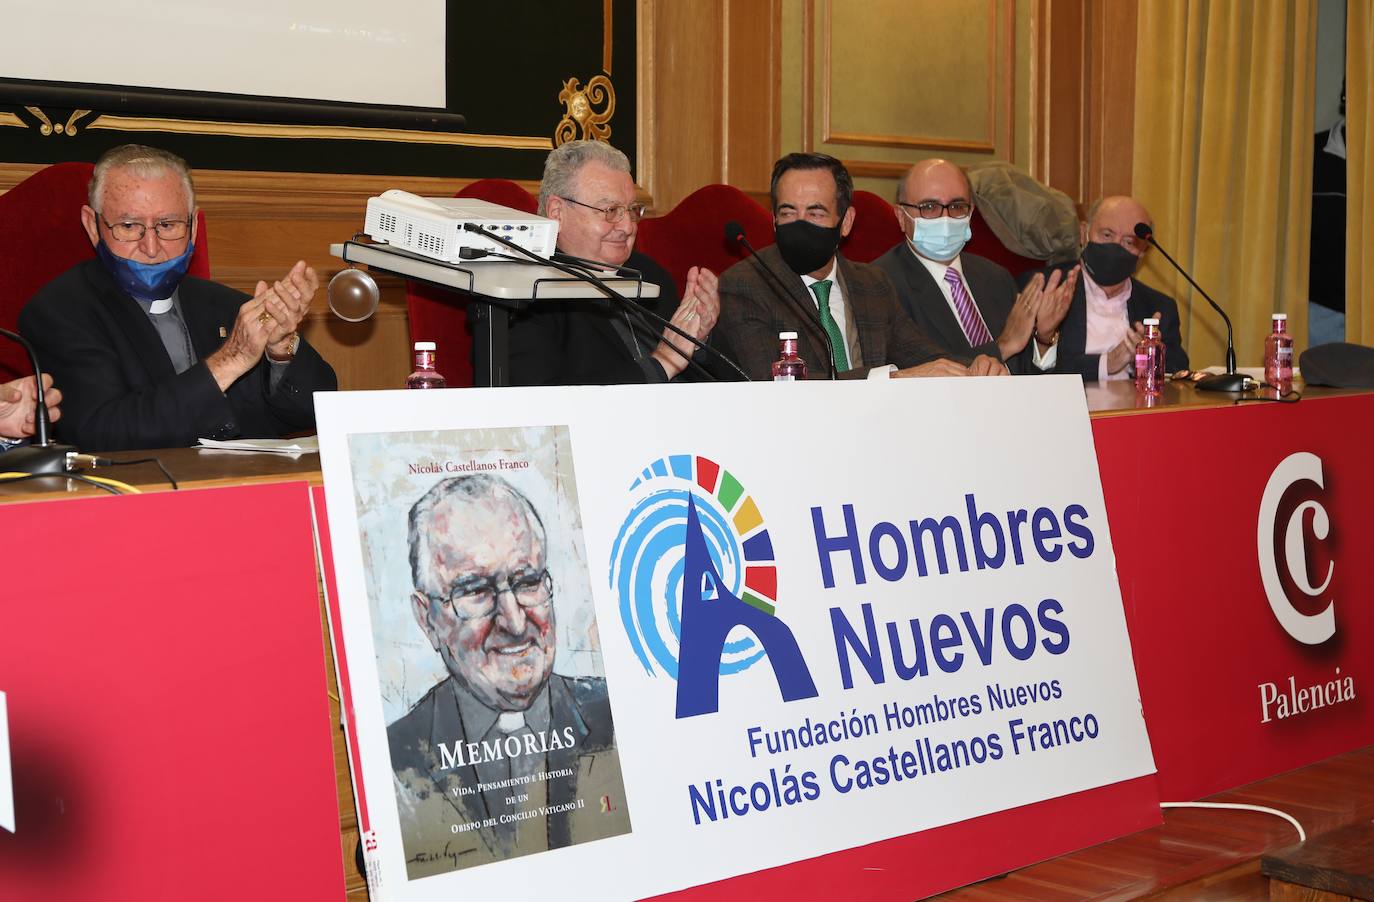 La Cámara de Comercio acogió la presentación del libro del monseñor Nicolás Castellanos 'Memorias, vida, pensamiento e historia de un obispo del Concilio Vaticano II'.